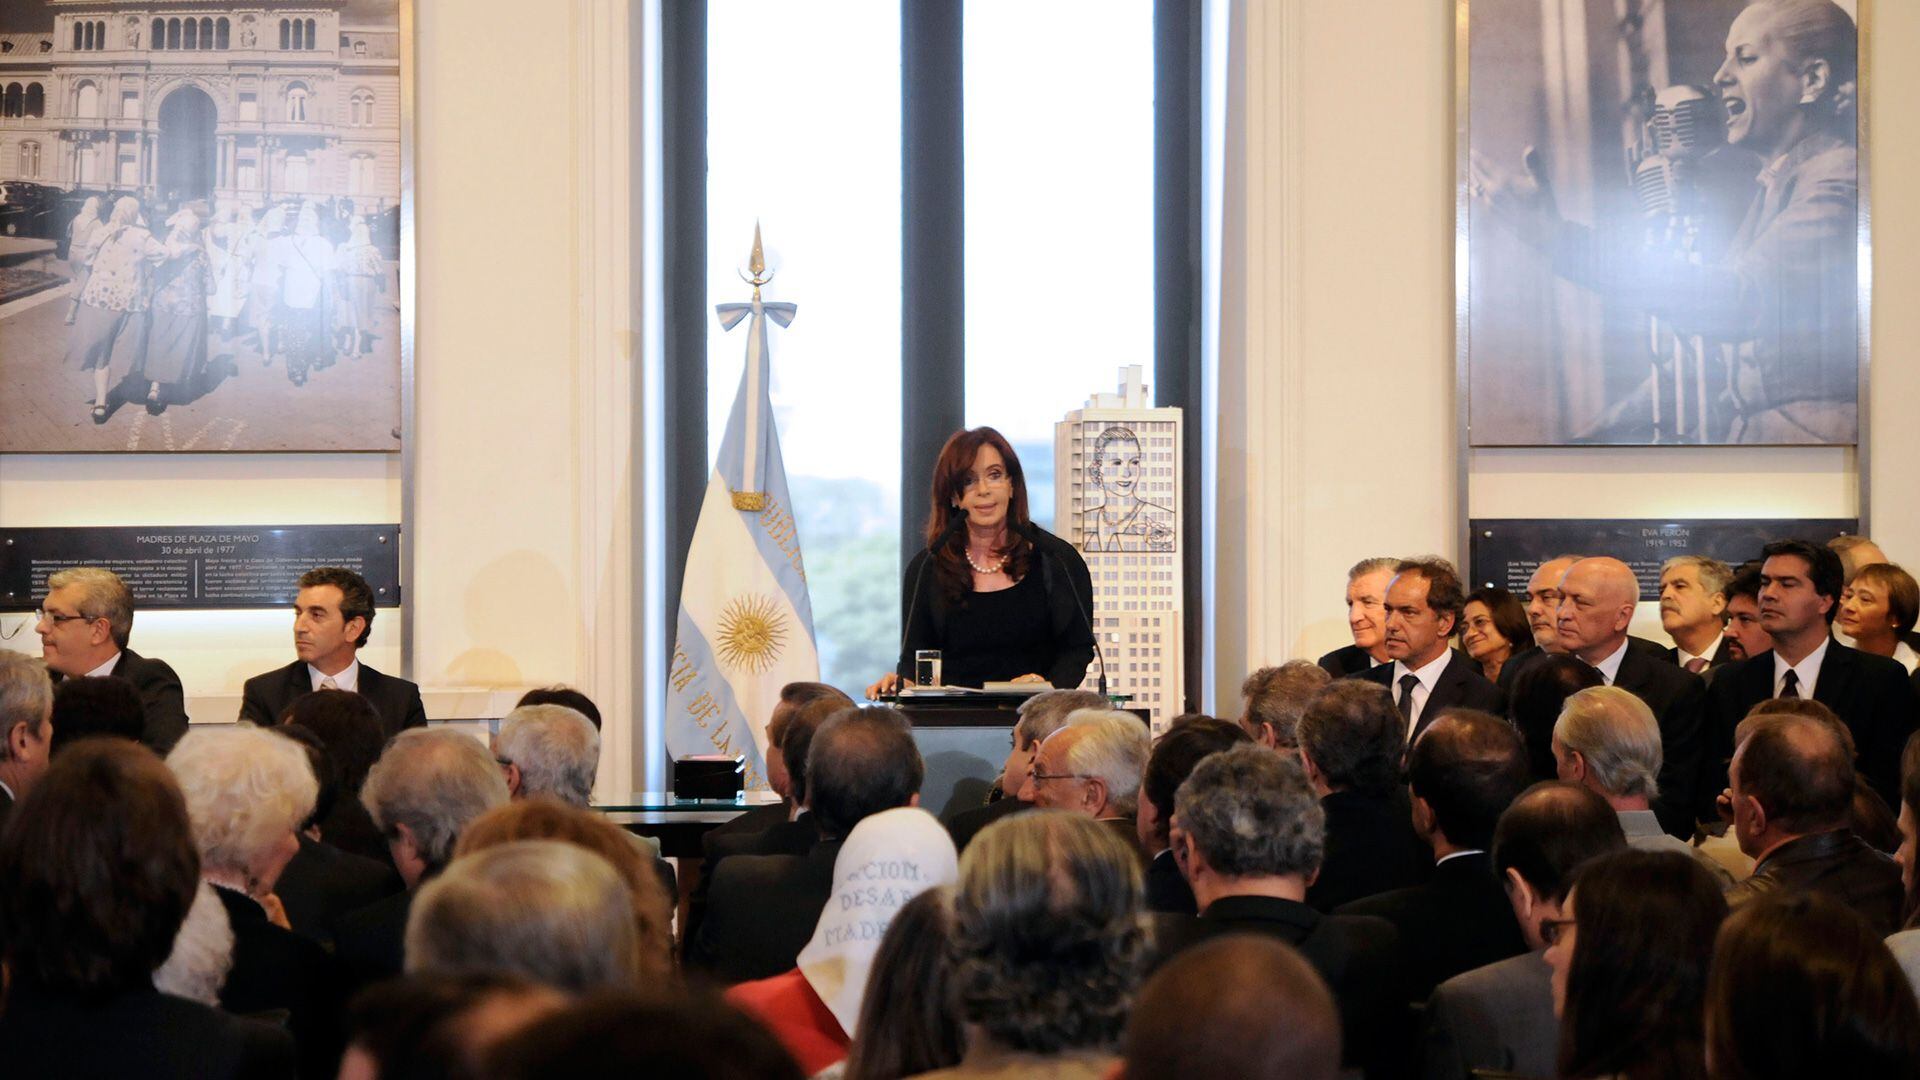 acto discurso cristina kirchner expropiación de YPF en abril de 2012.